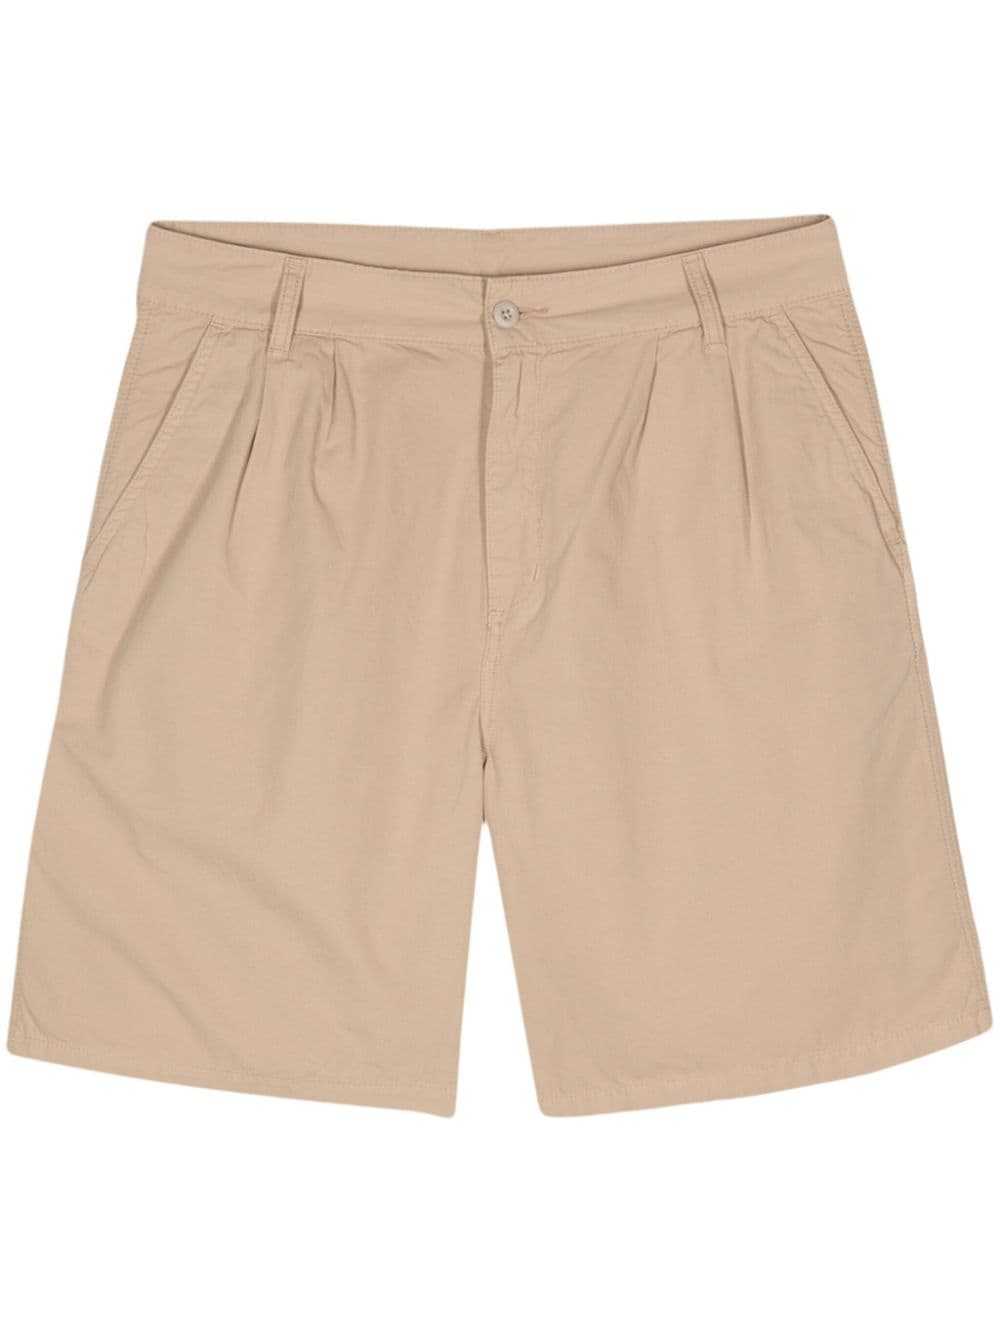 Carhartt WIP Colston poplin bermuda shorts - Neutrals von Carhartt WIP